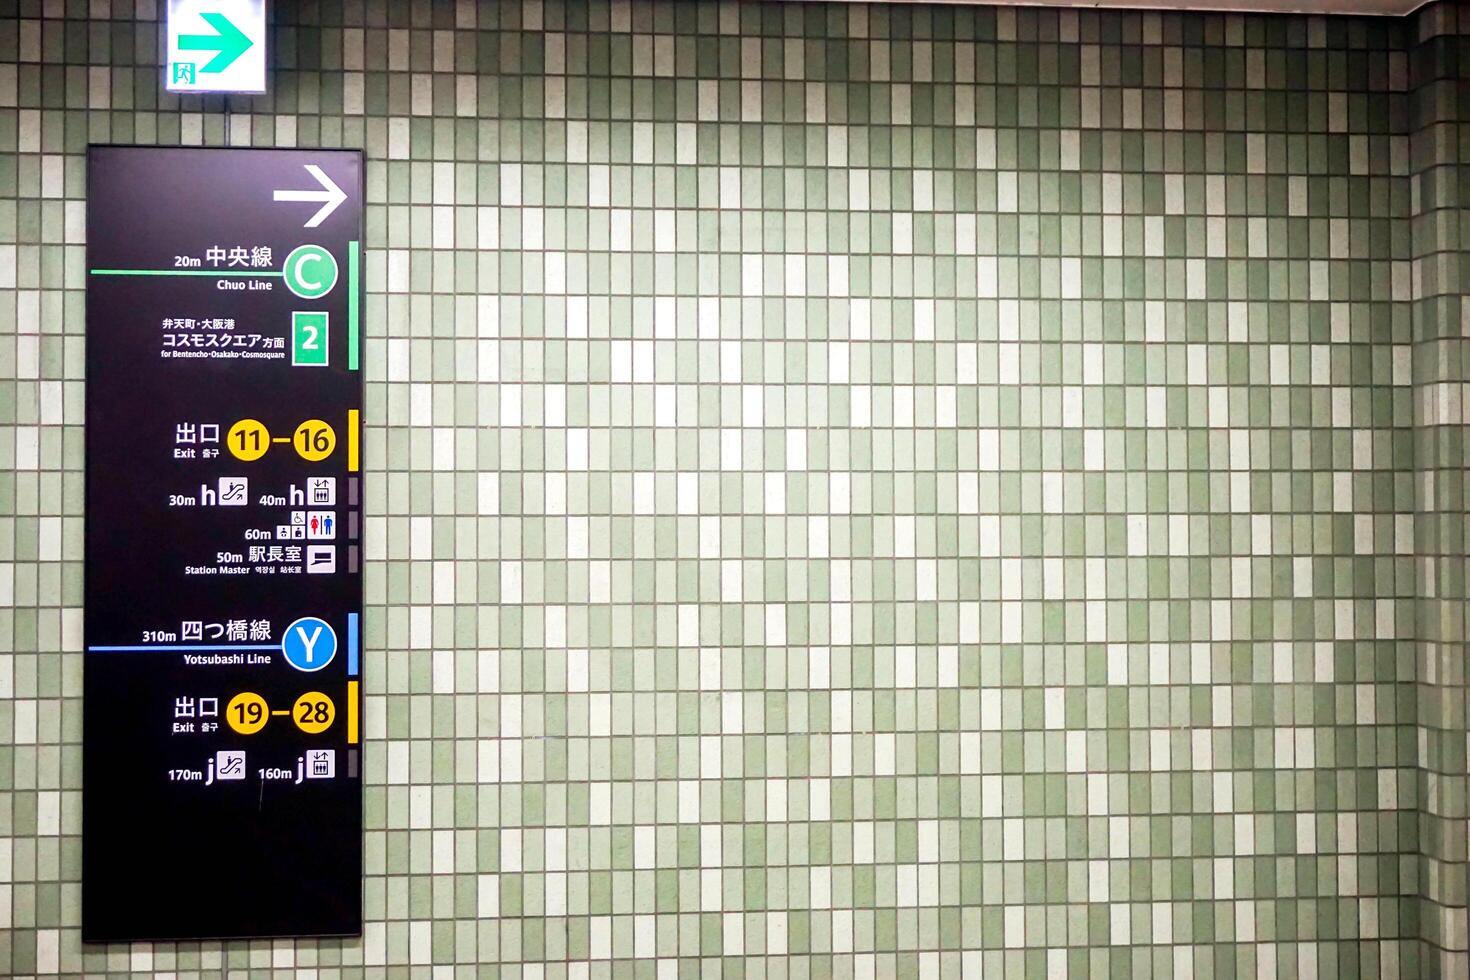 Osaka cidade, Japão, 2018 - guia postar instalar em quadrado azulejos dentro Osaka metrô. foto